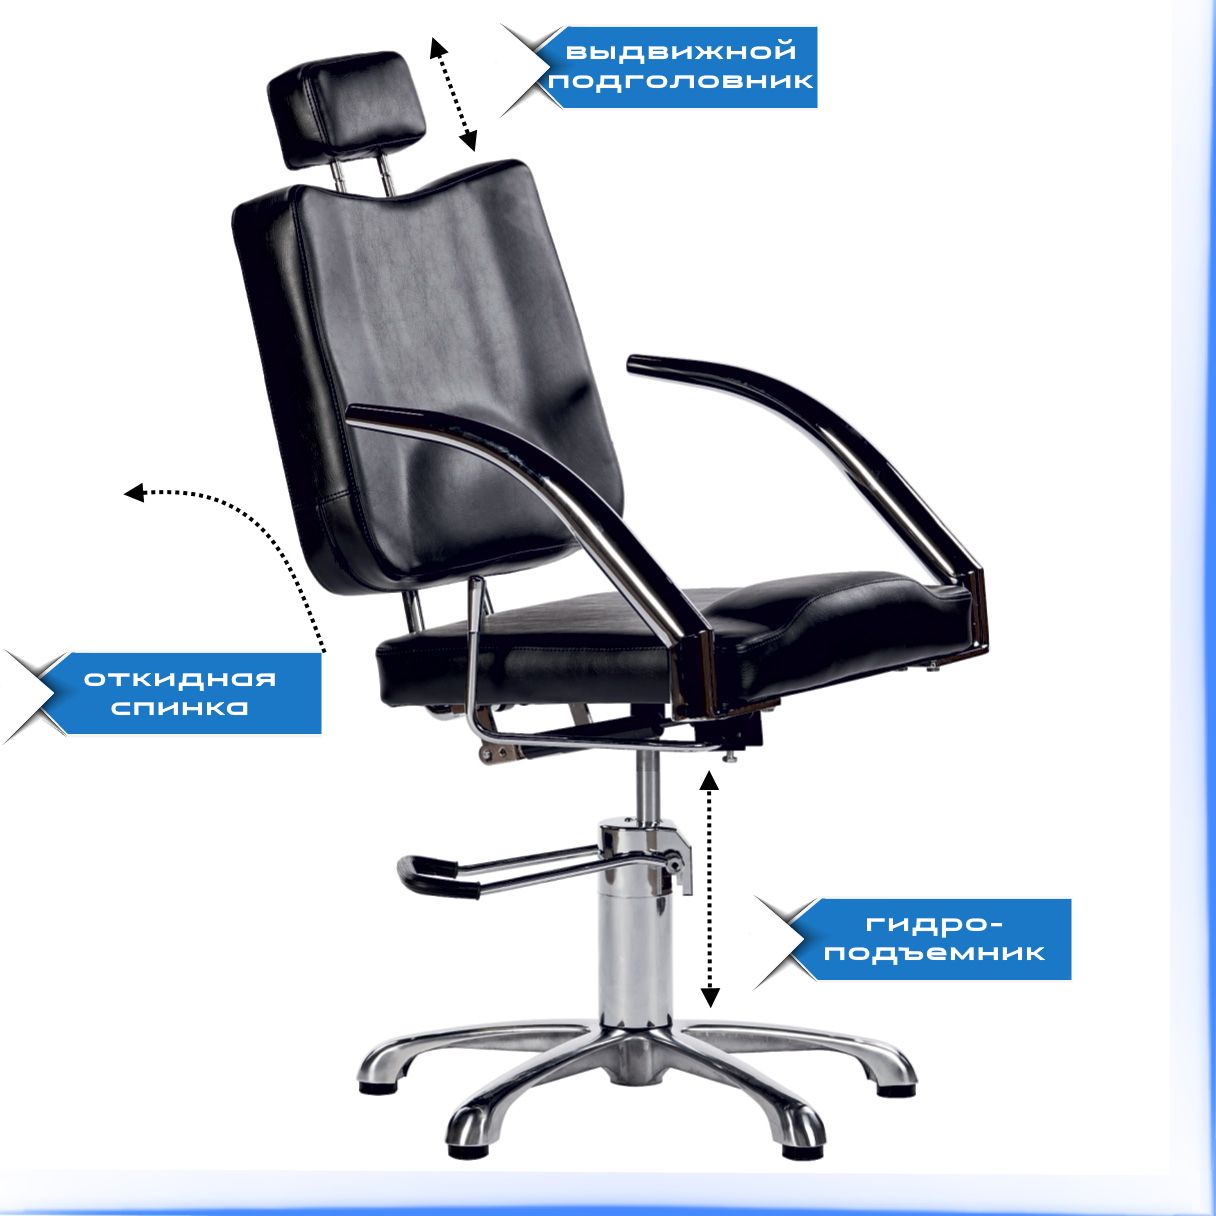 Регулировка угла наклона спинки кресла